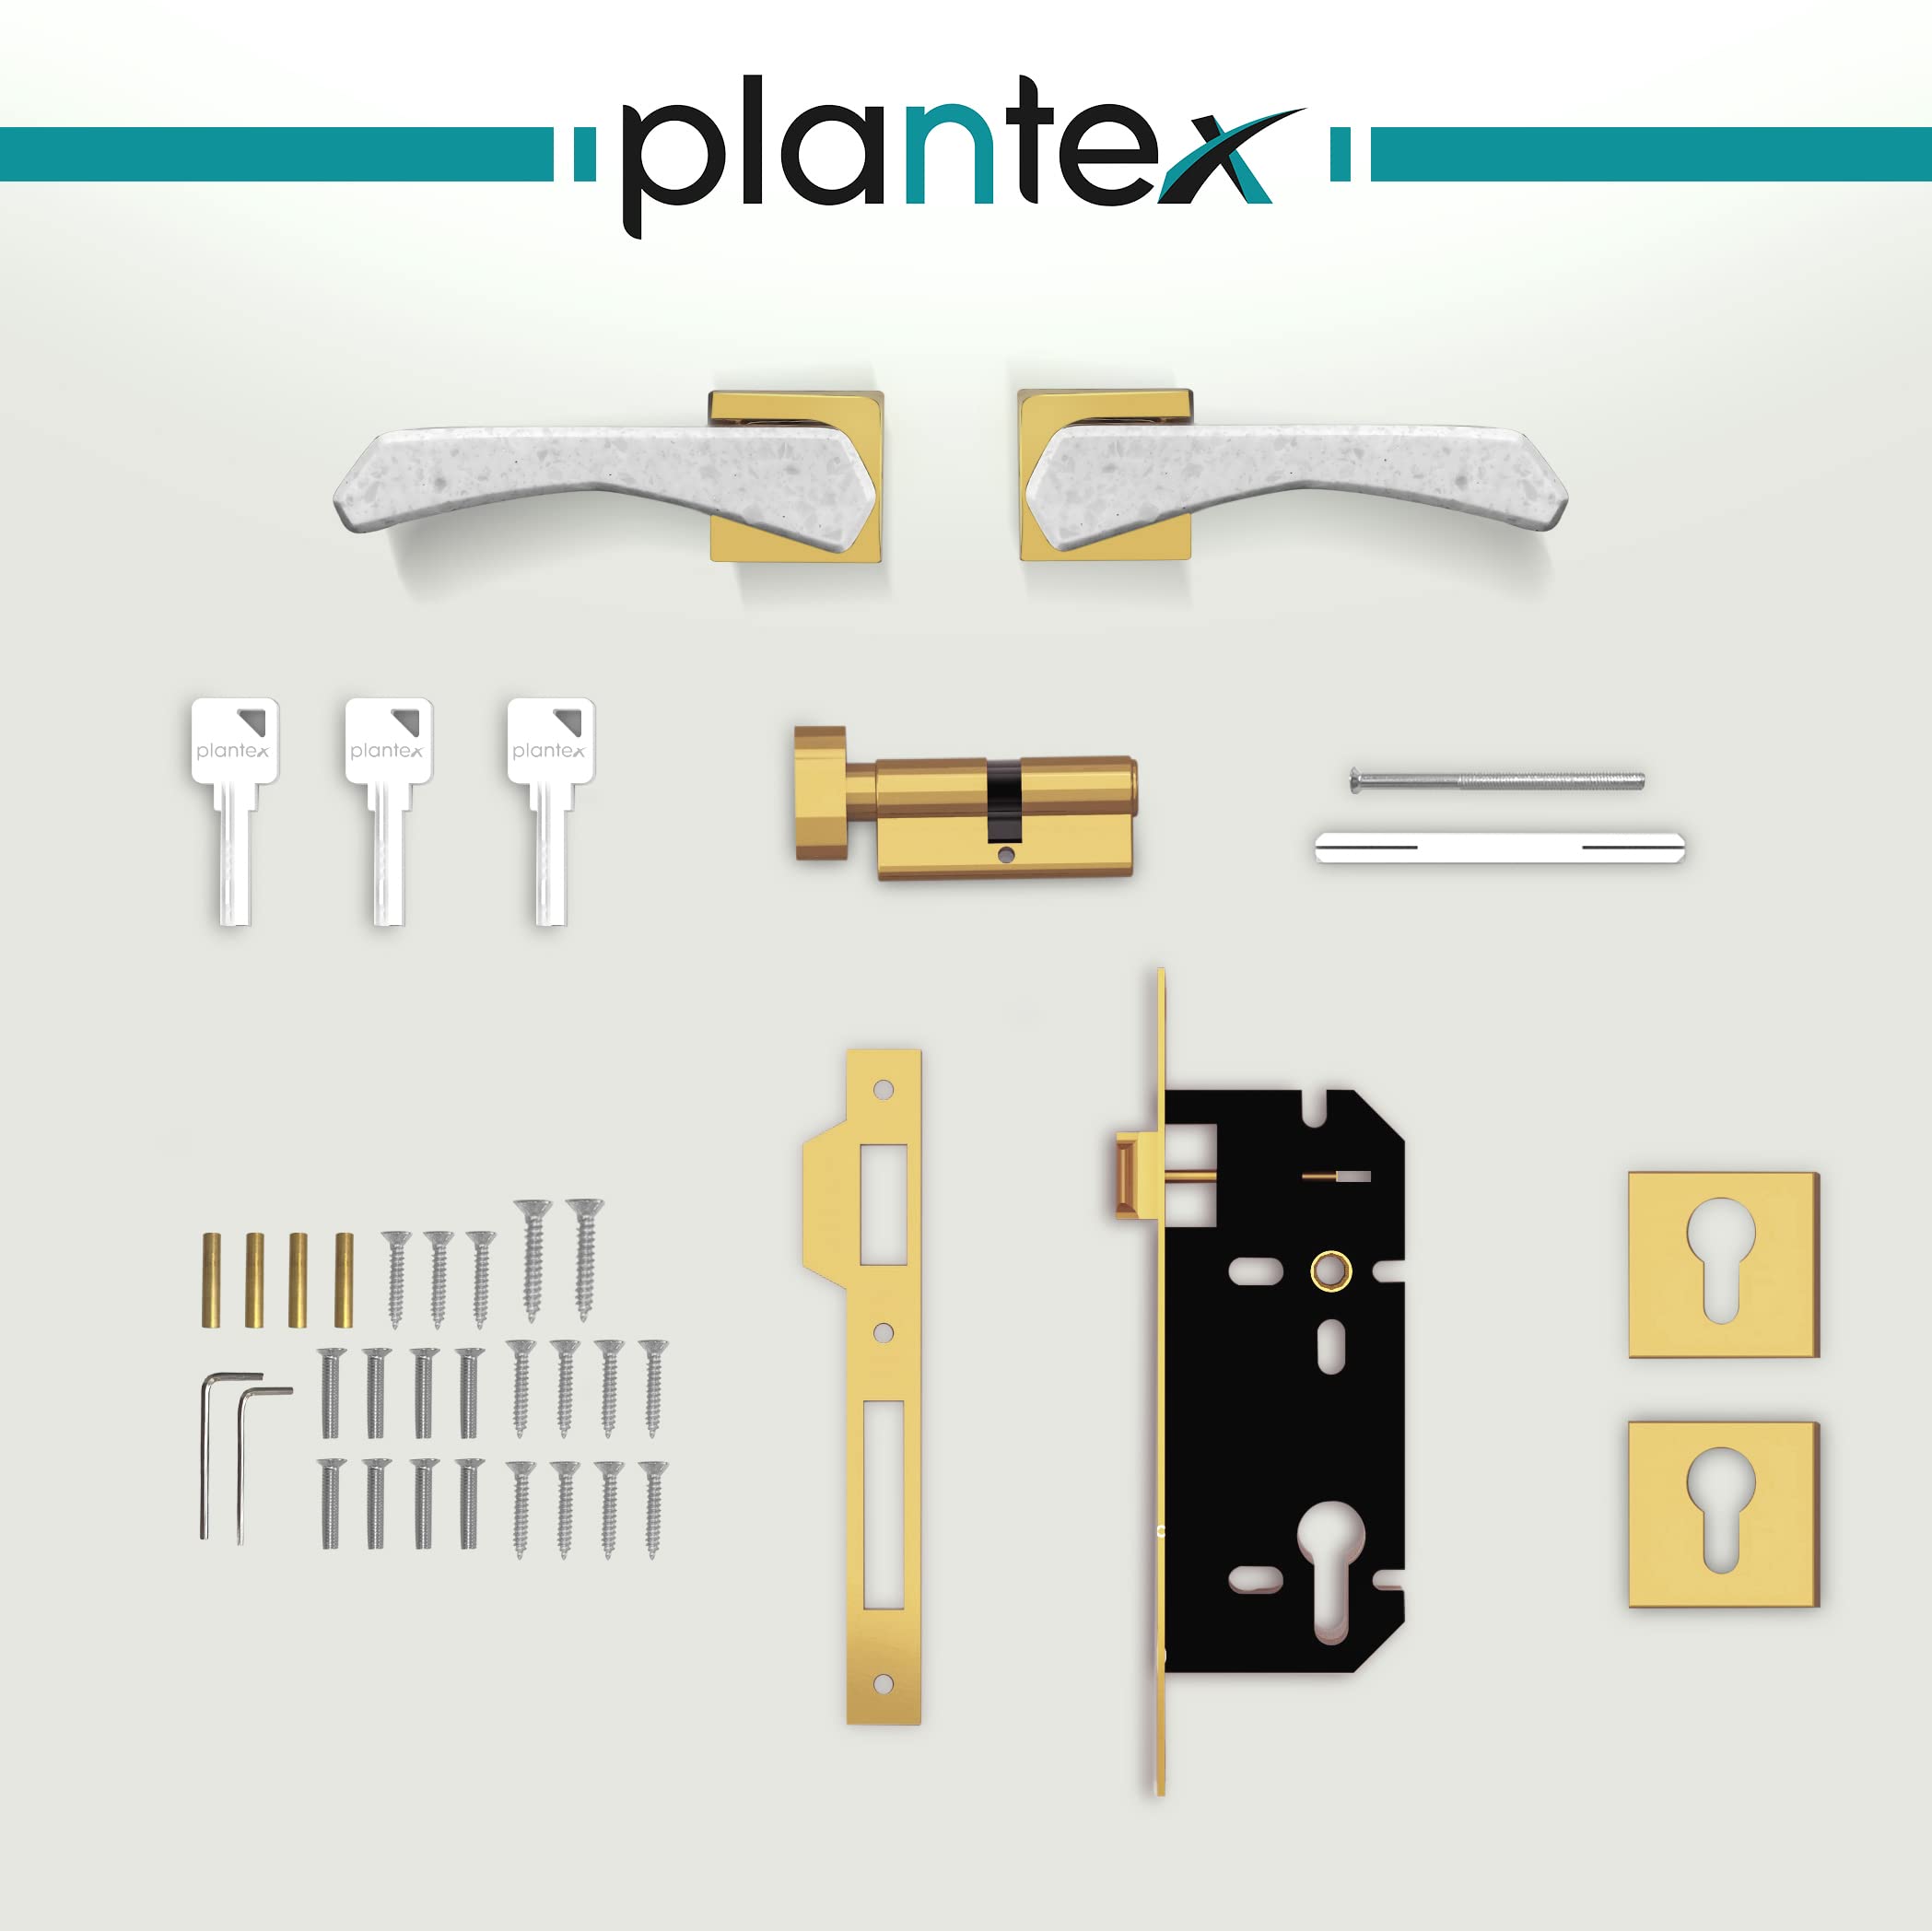 Plantex Heavy Duty Door Lock - Main Door Lock Set with 3 Keys/Mortise Door Lock for Home/Office/Hotel (594 - Gold and White)